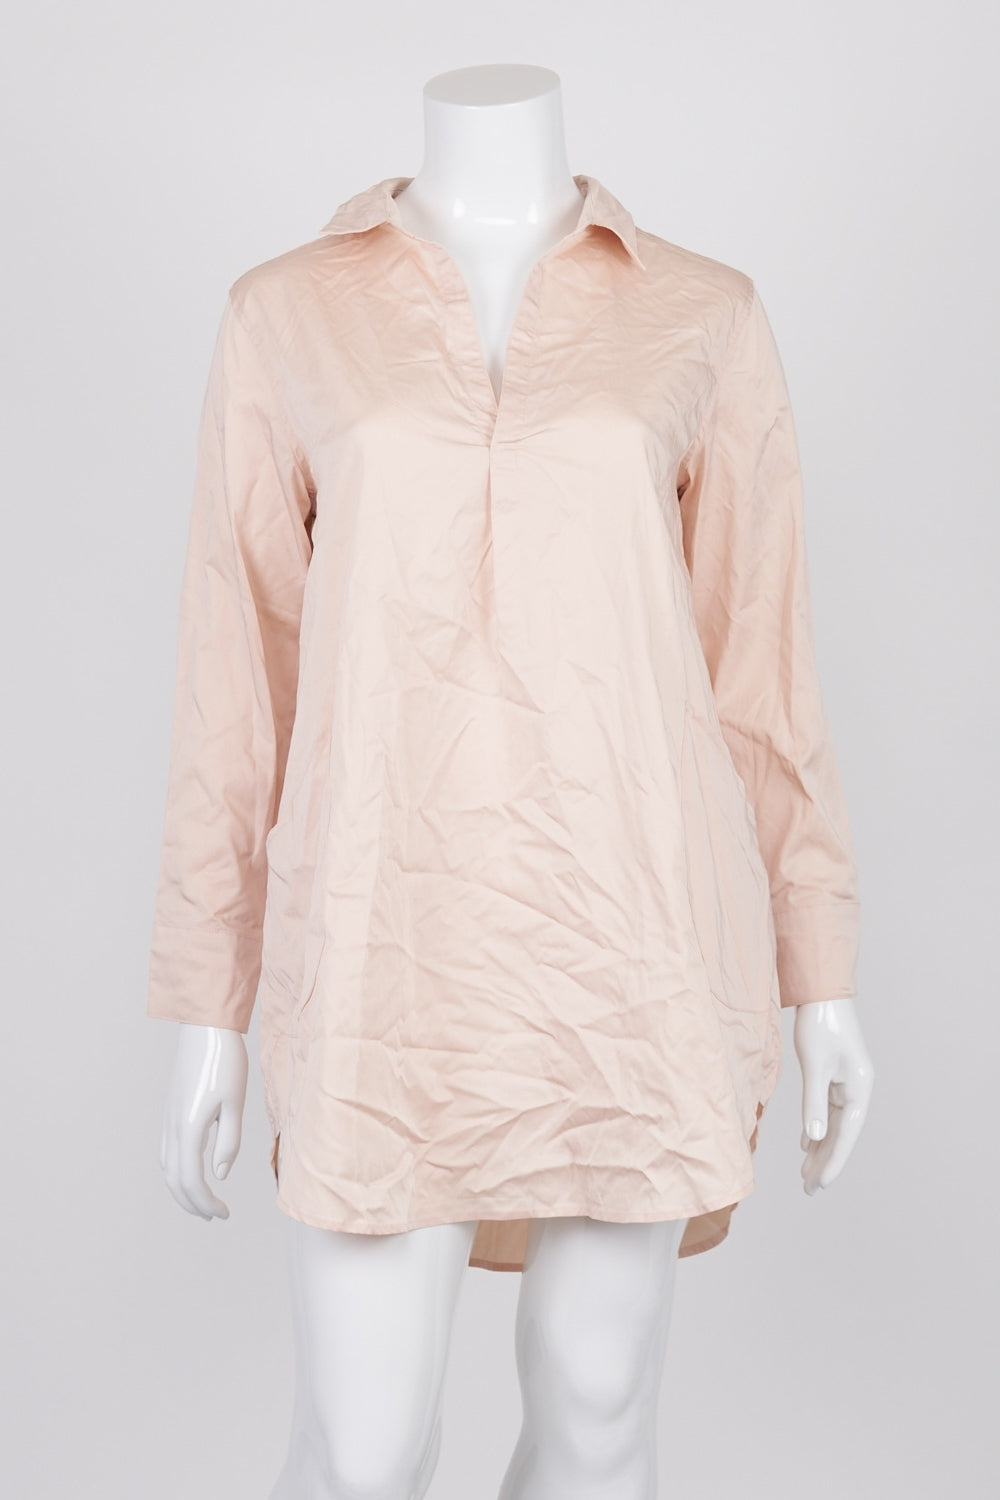 Fate & Becker Pink Lindsay Oversized Shirt Dress 14